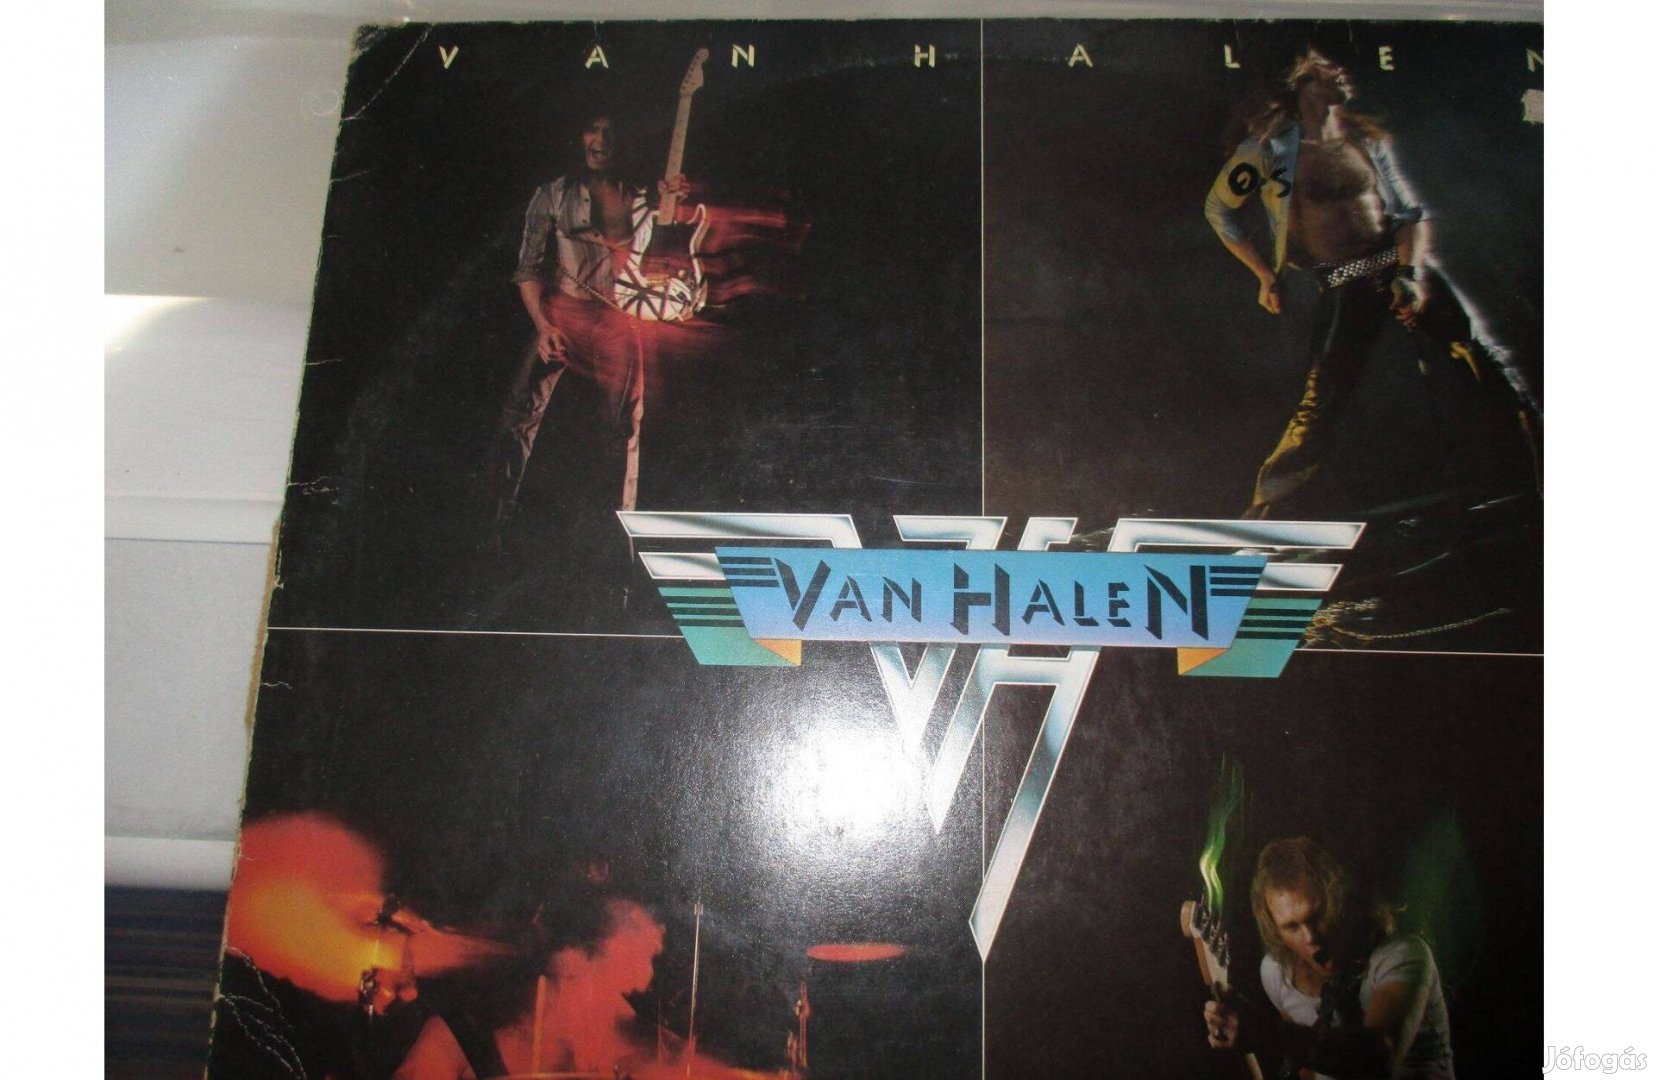 Van Halen bakelit hanglemez eladó